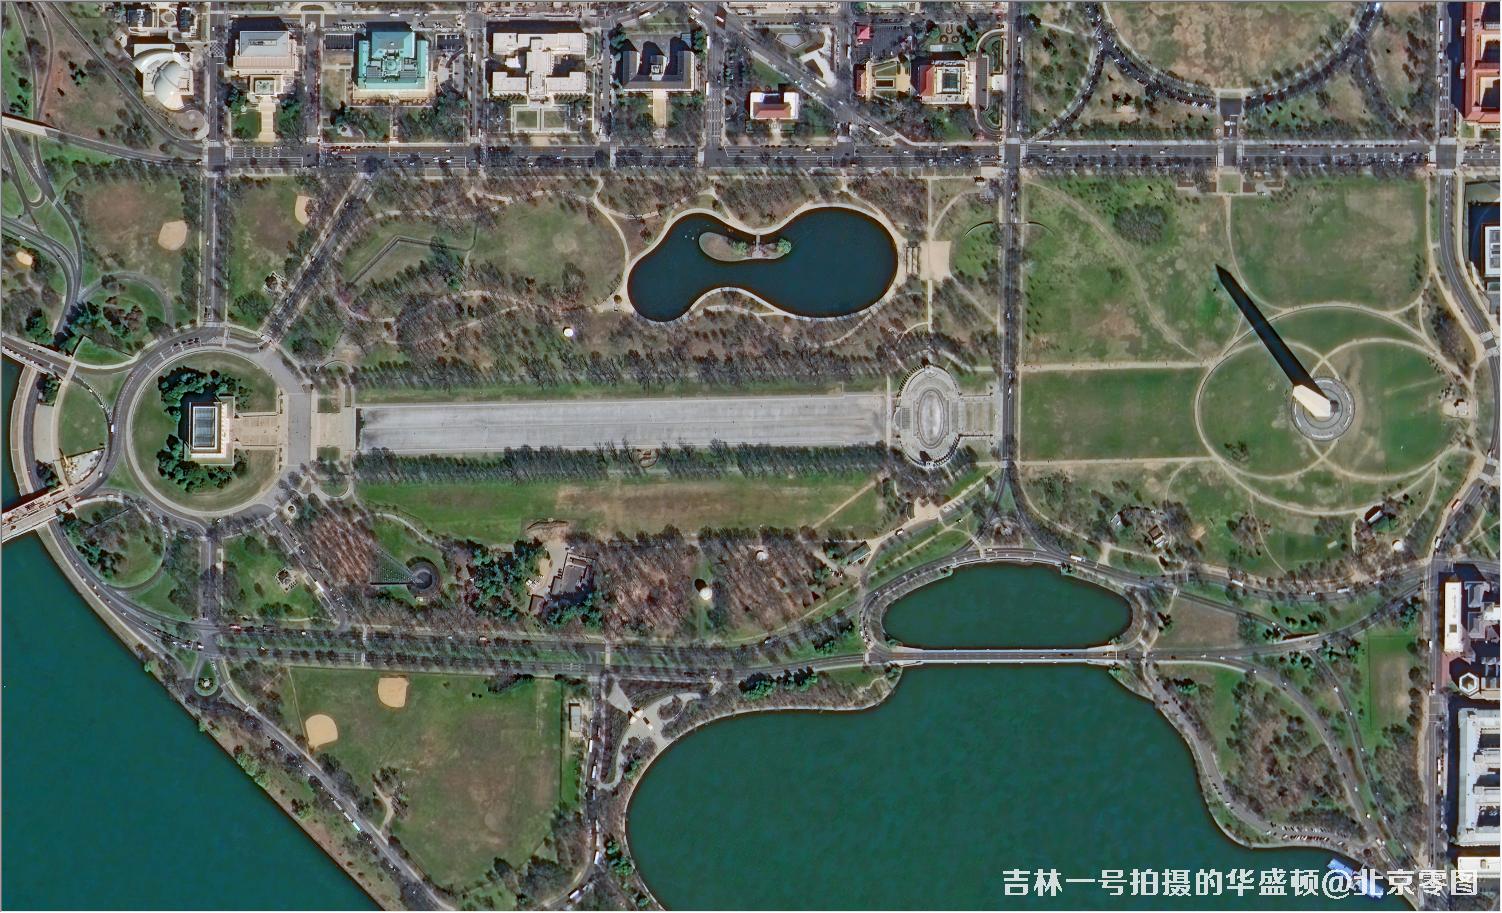 吉林一号宽幅01A卫星拍摄的华盛顿卫星图